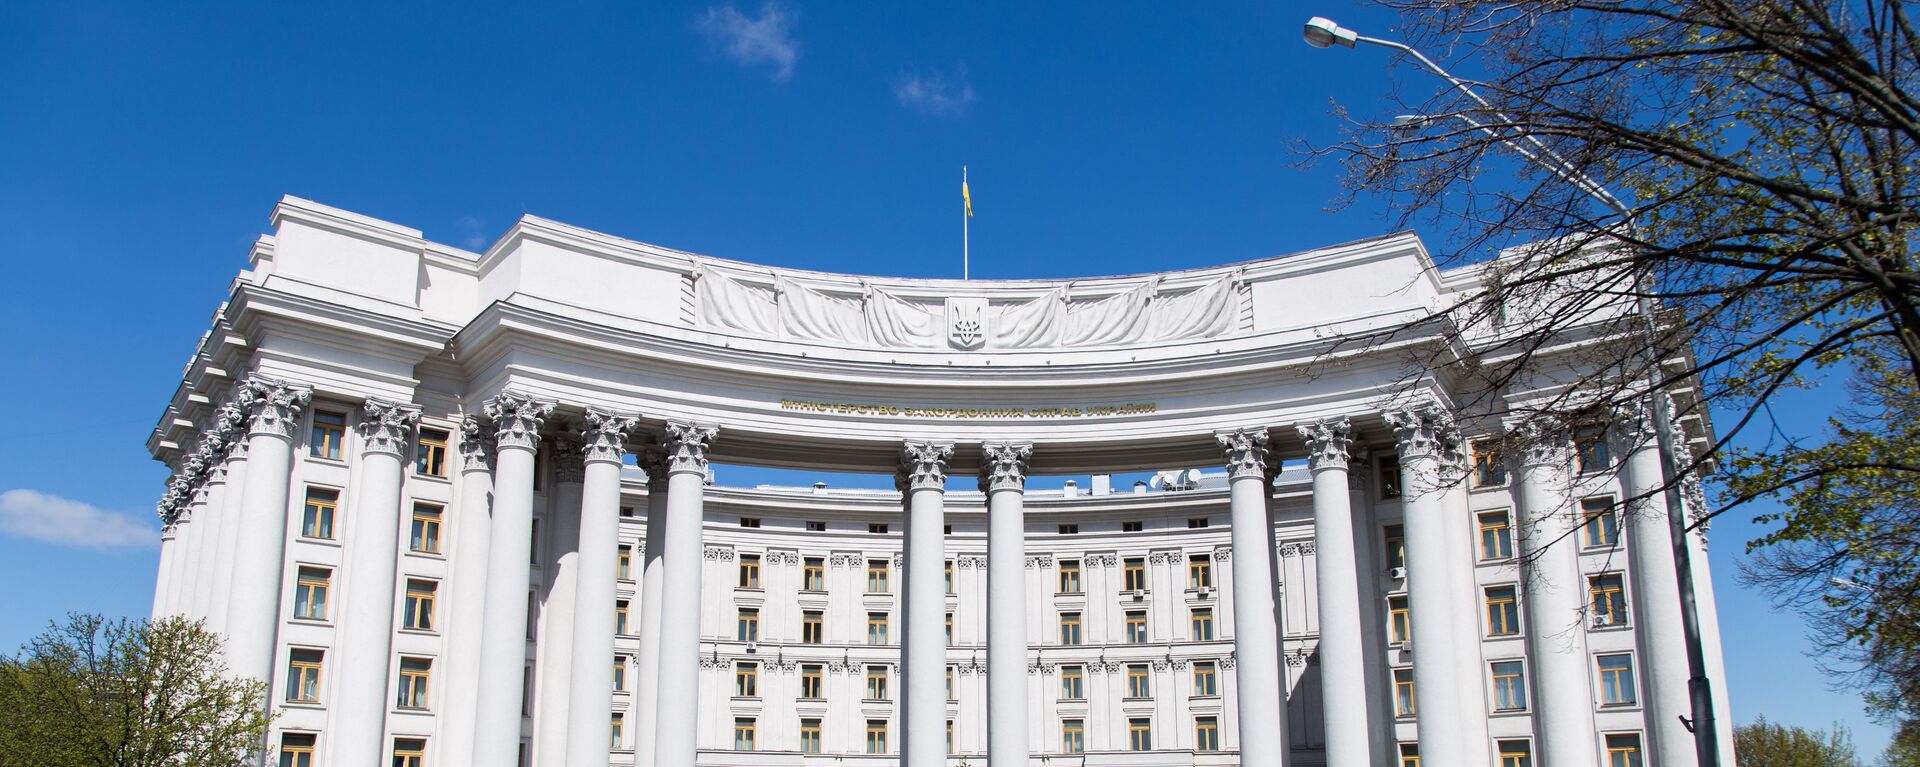 Здание Министерства иностранных дел Украины в Киеве, архивное фото - Sputnik Беларусь, 1920, 02.06.2021